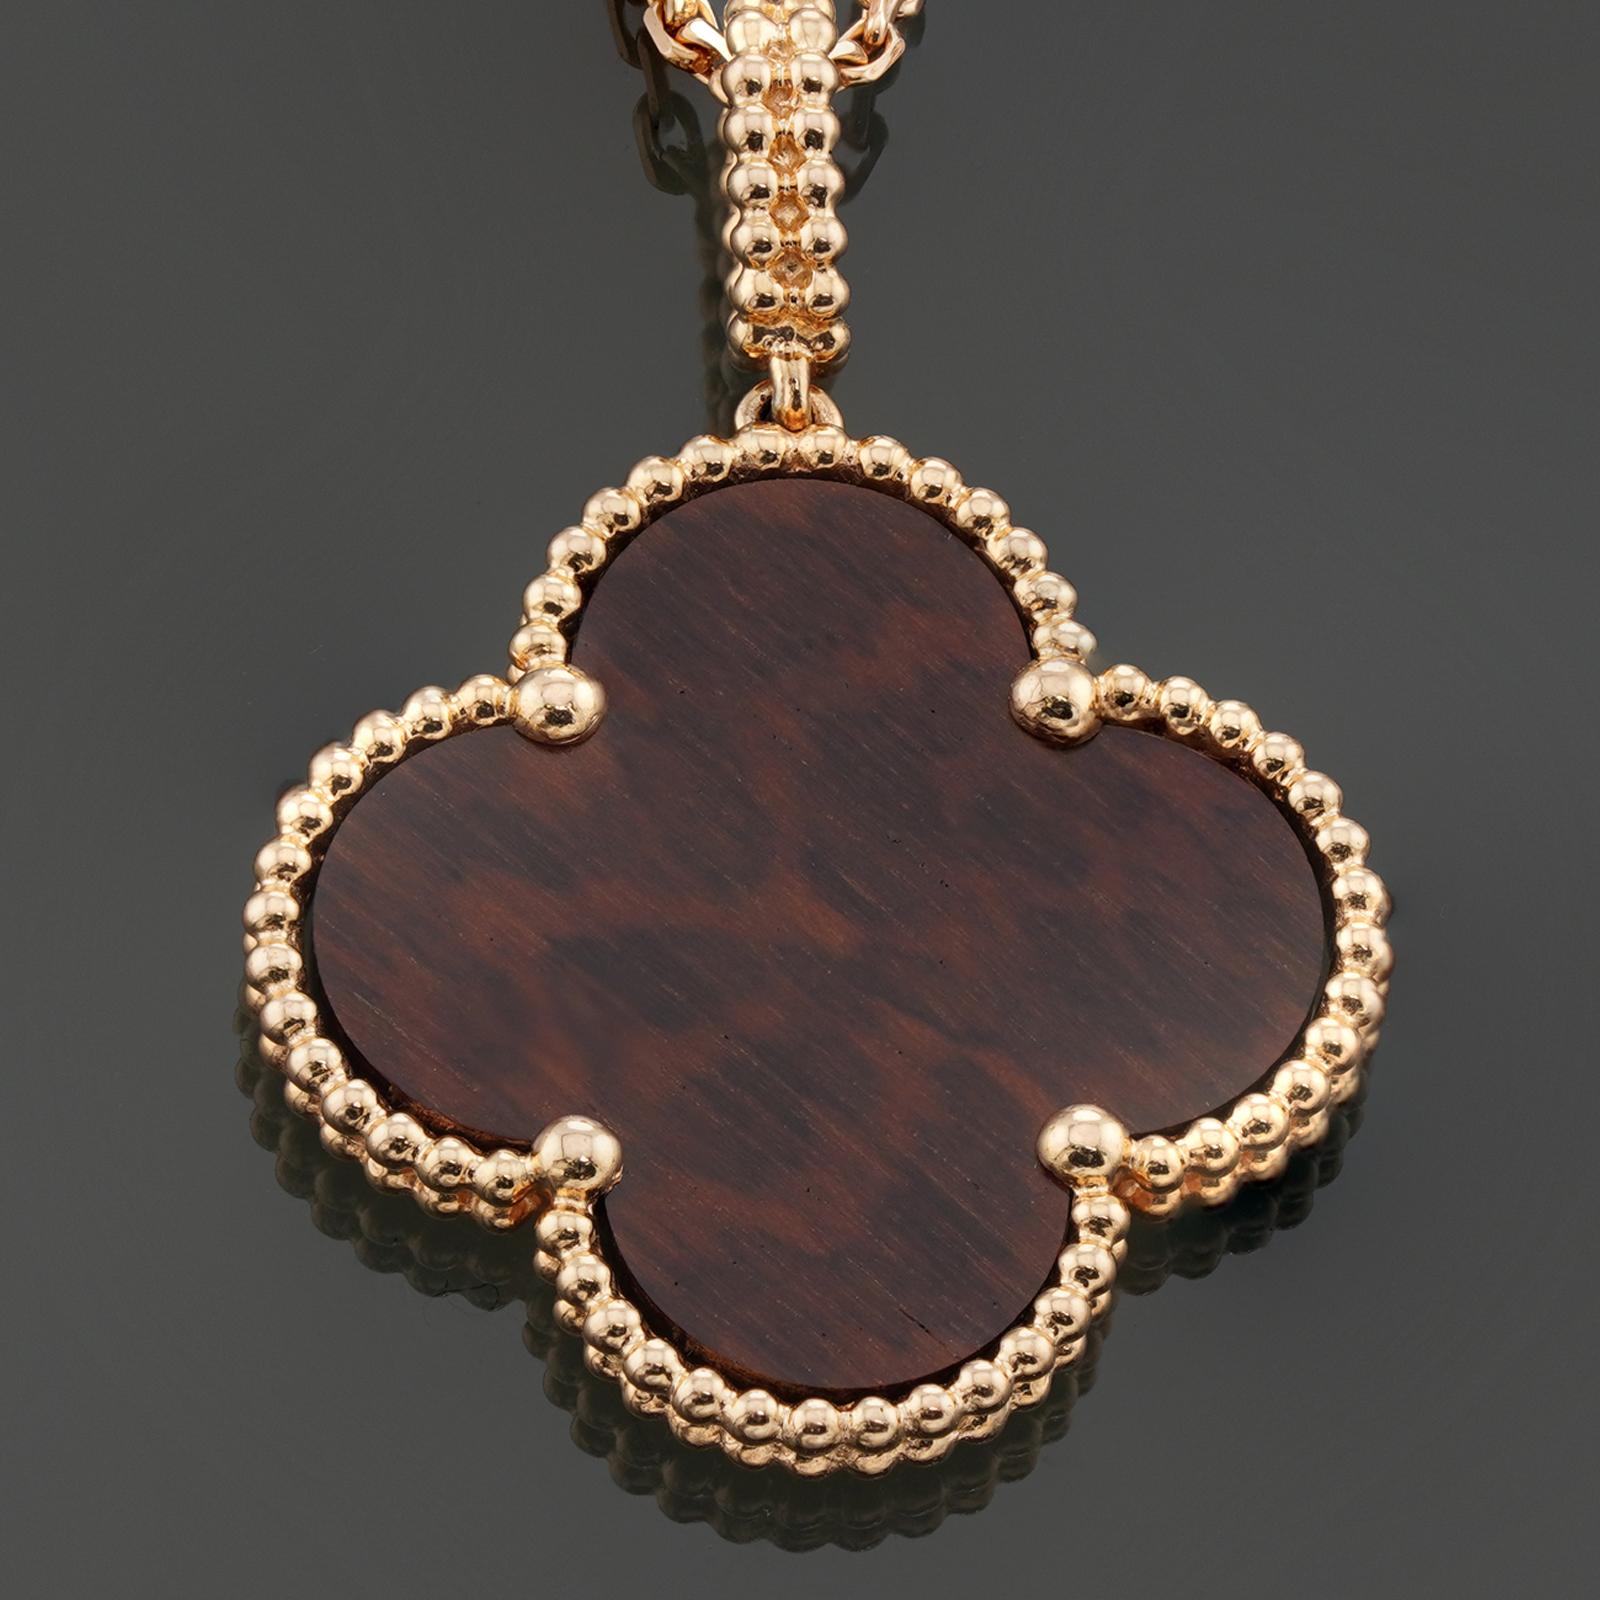 Ce magnifique collier Van Cleef & Arpels est réalisé en or rose 18 carats et comporte un pendentif en bois de lettré. La collection Magic Alhambra s'inspire des trèfles à quatre feuilles porte-bonheur et des arcades festonnées du palais de